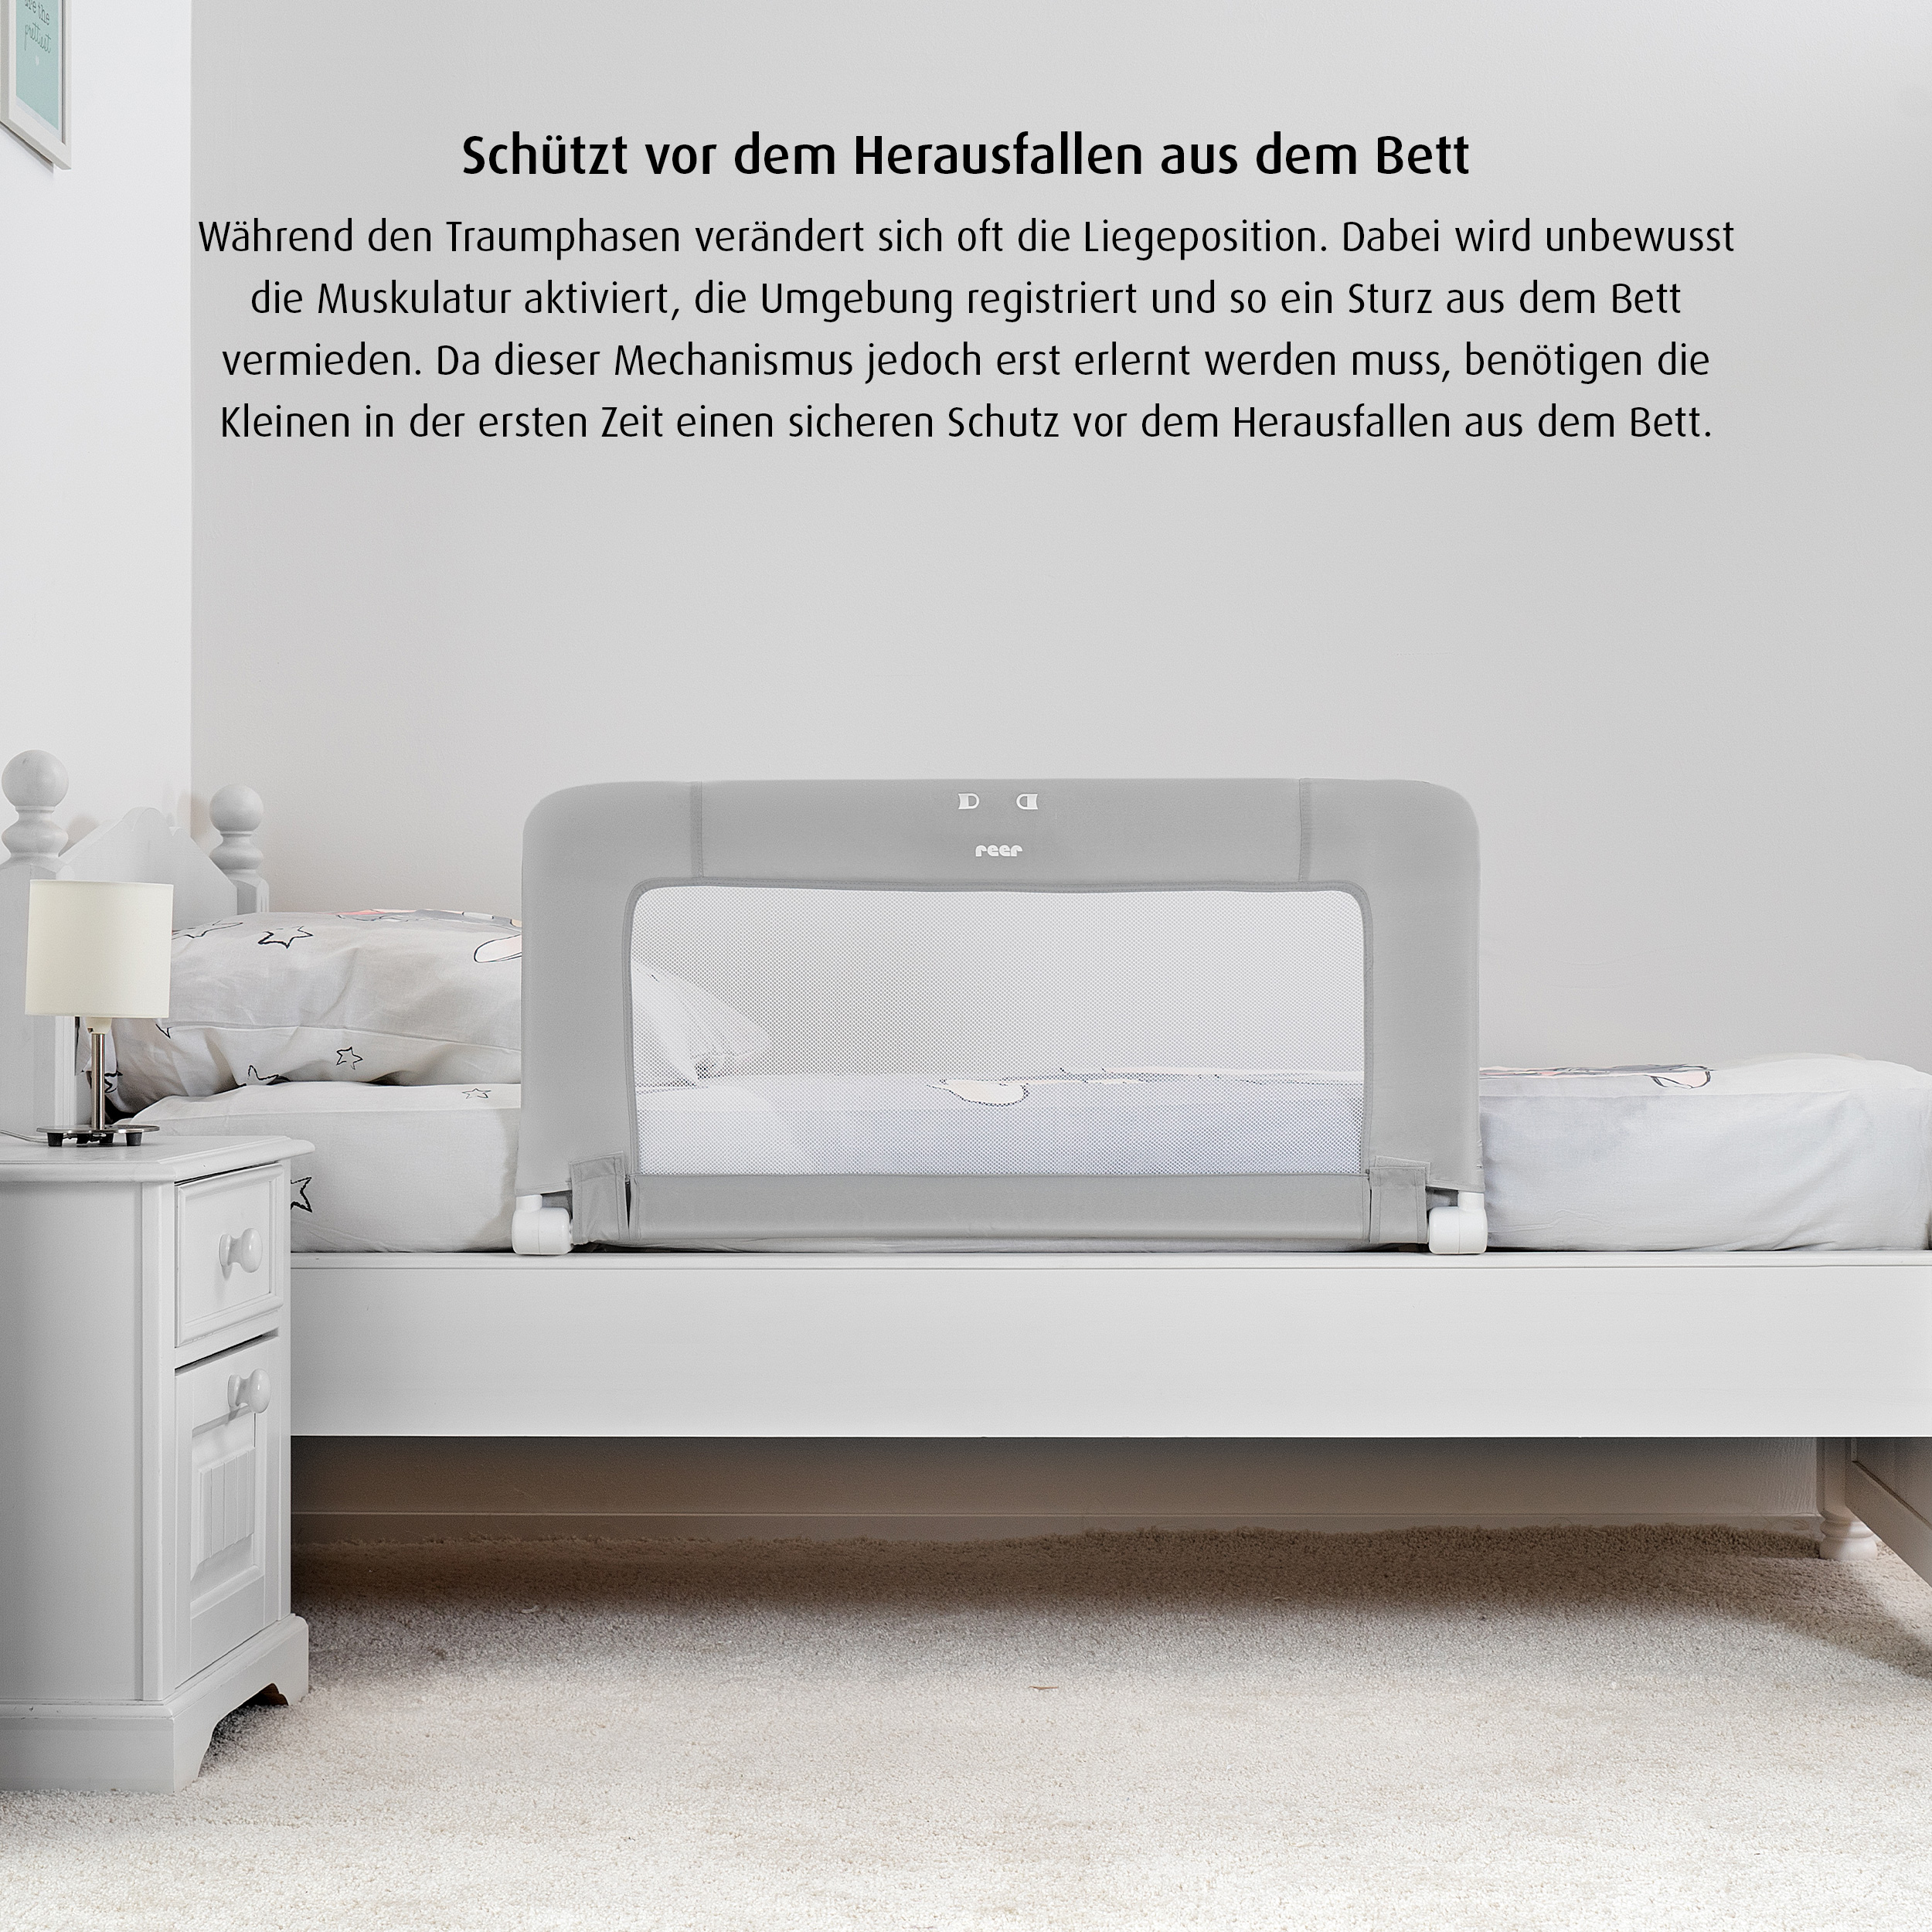 ByMySide Bettgitter für Betten 150 cm - 180 cm mit Abklappfunktion - geprüfte B-Ware